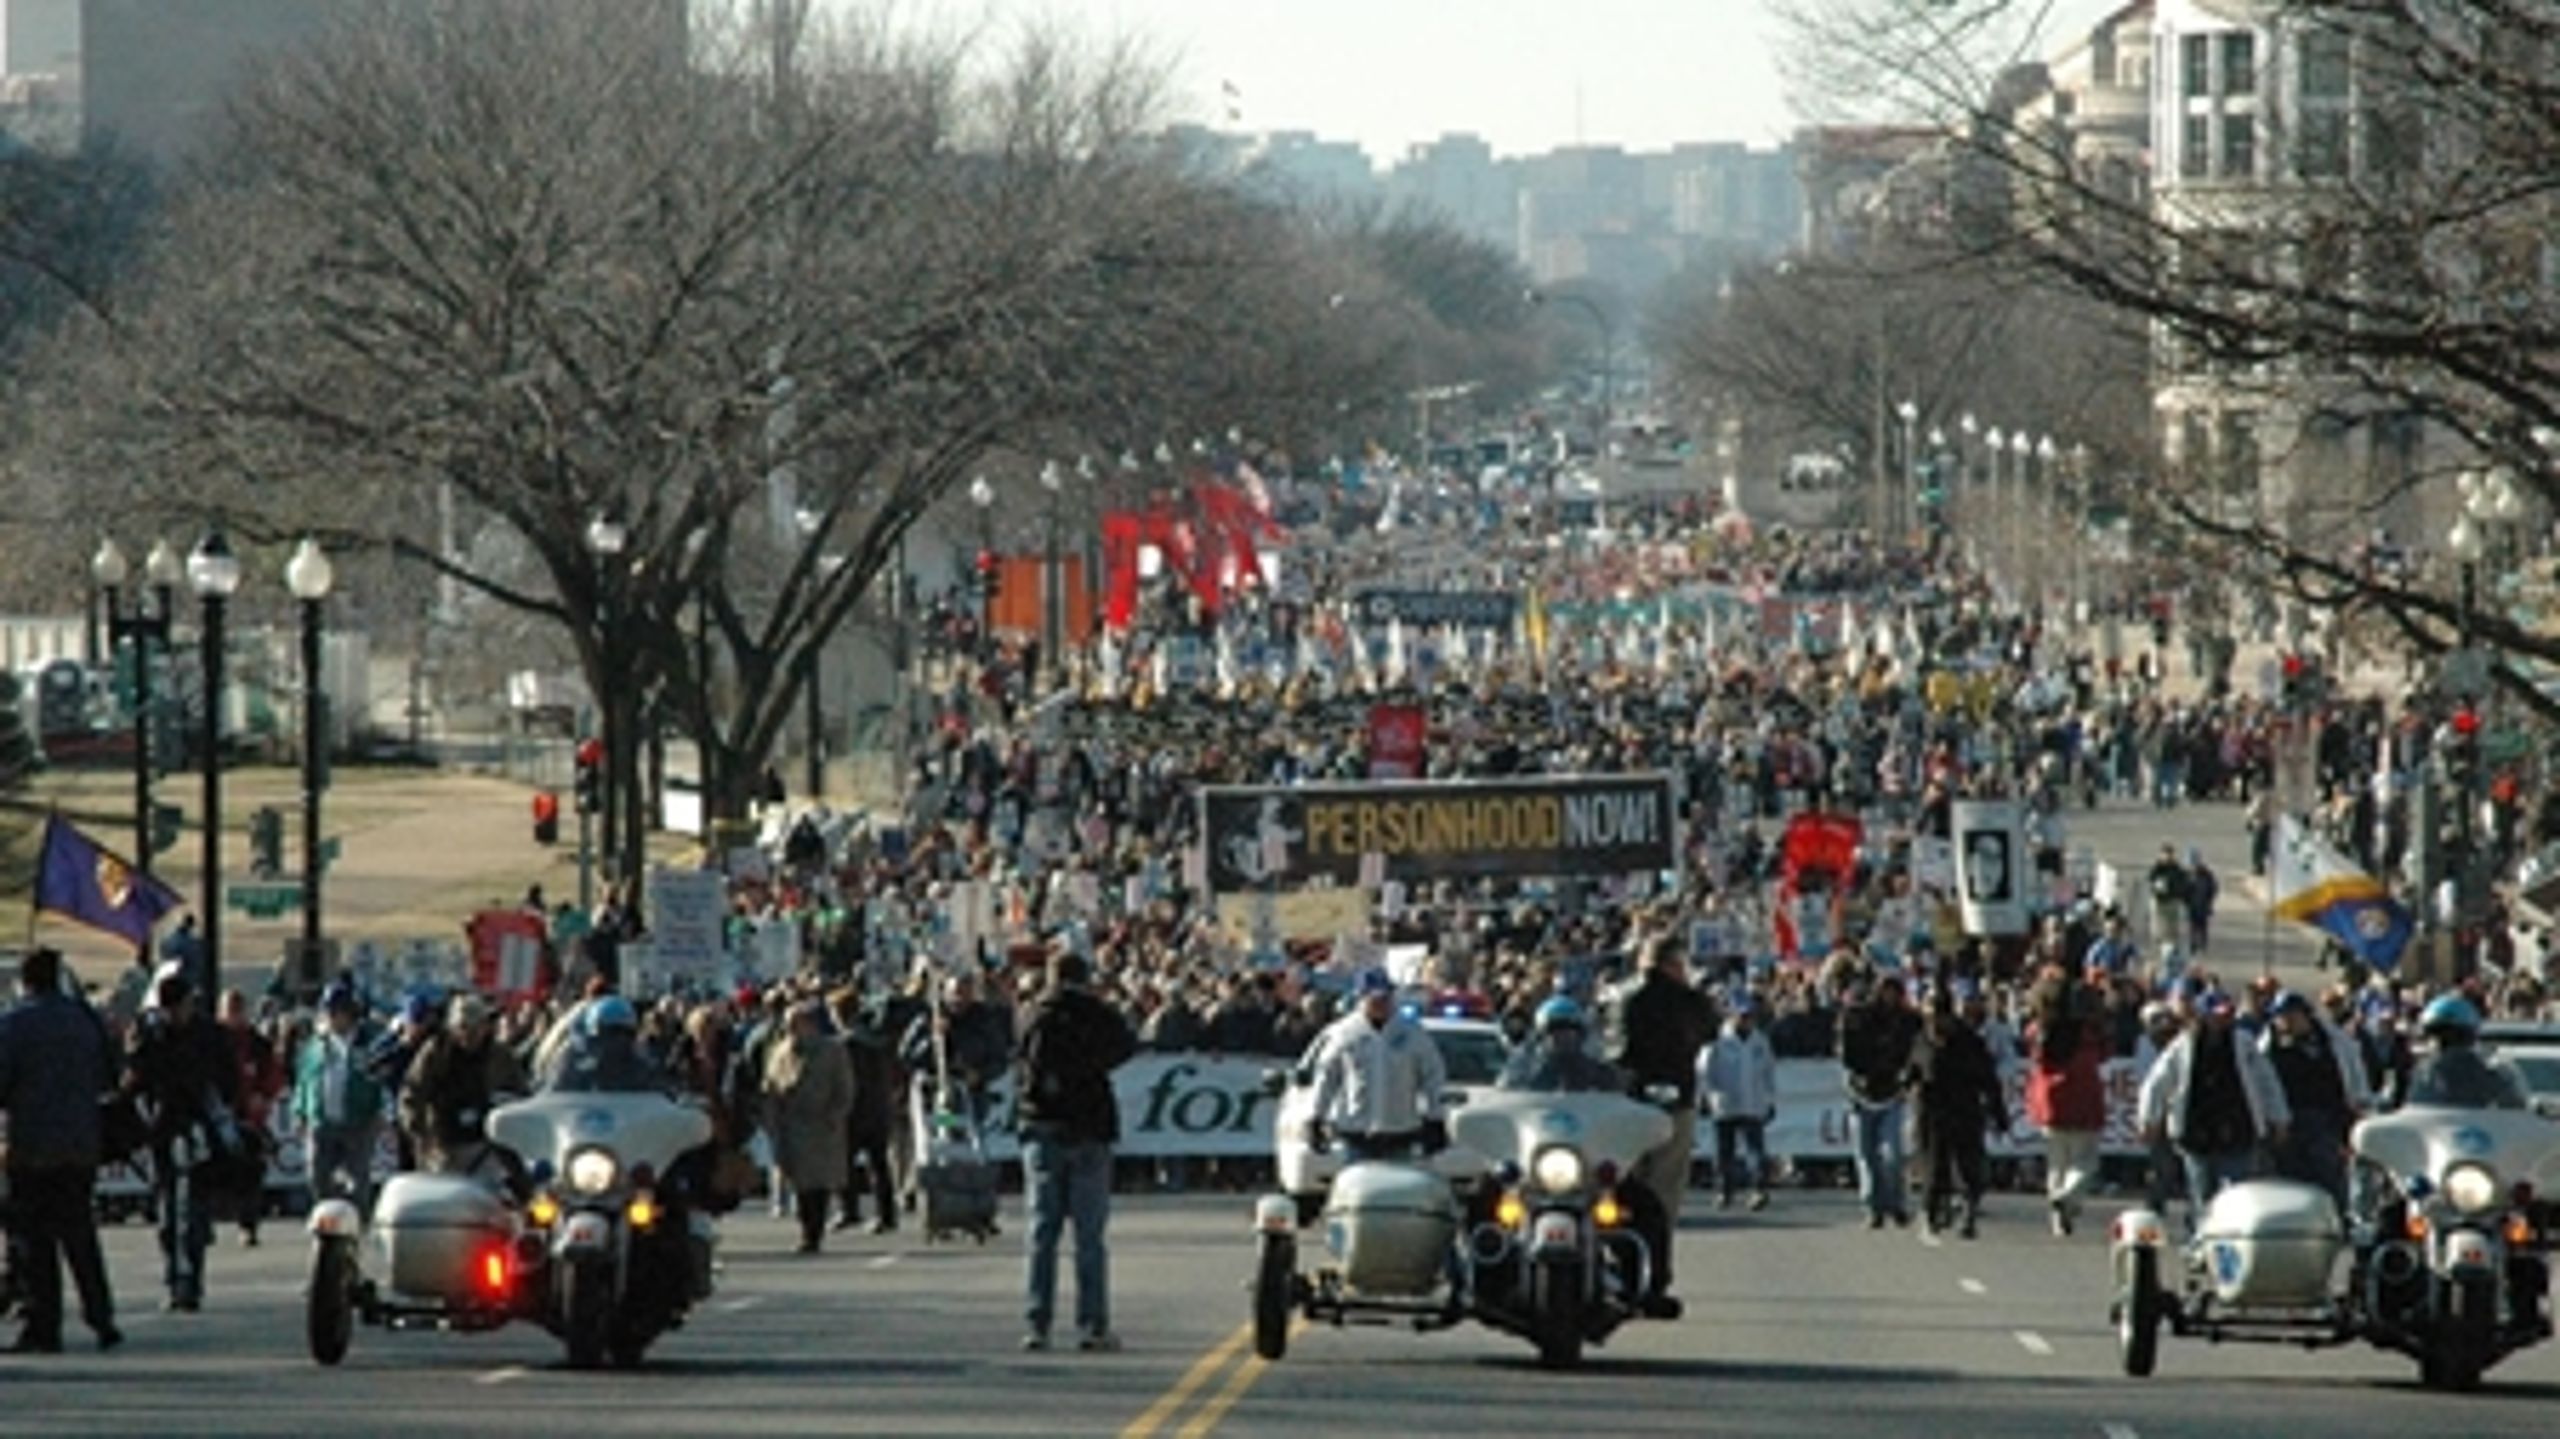 I mange stater bliver abortlovgivningen strammet, og demonstrationer for og imod abort - her 'March for Life' i DC - har fået større mediebevågenhed det sidste år.